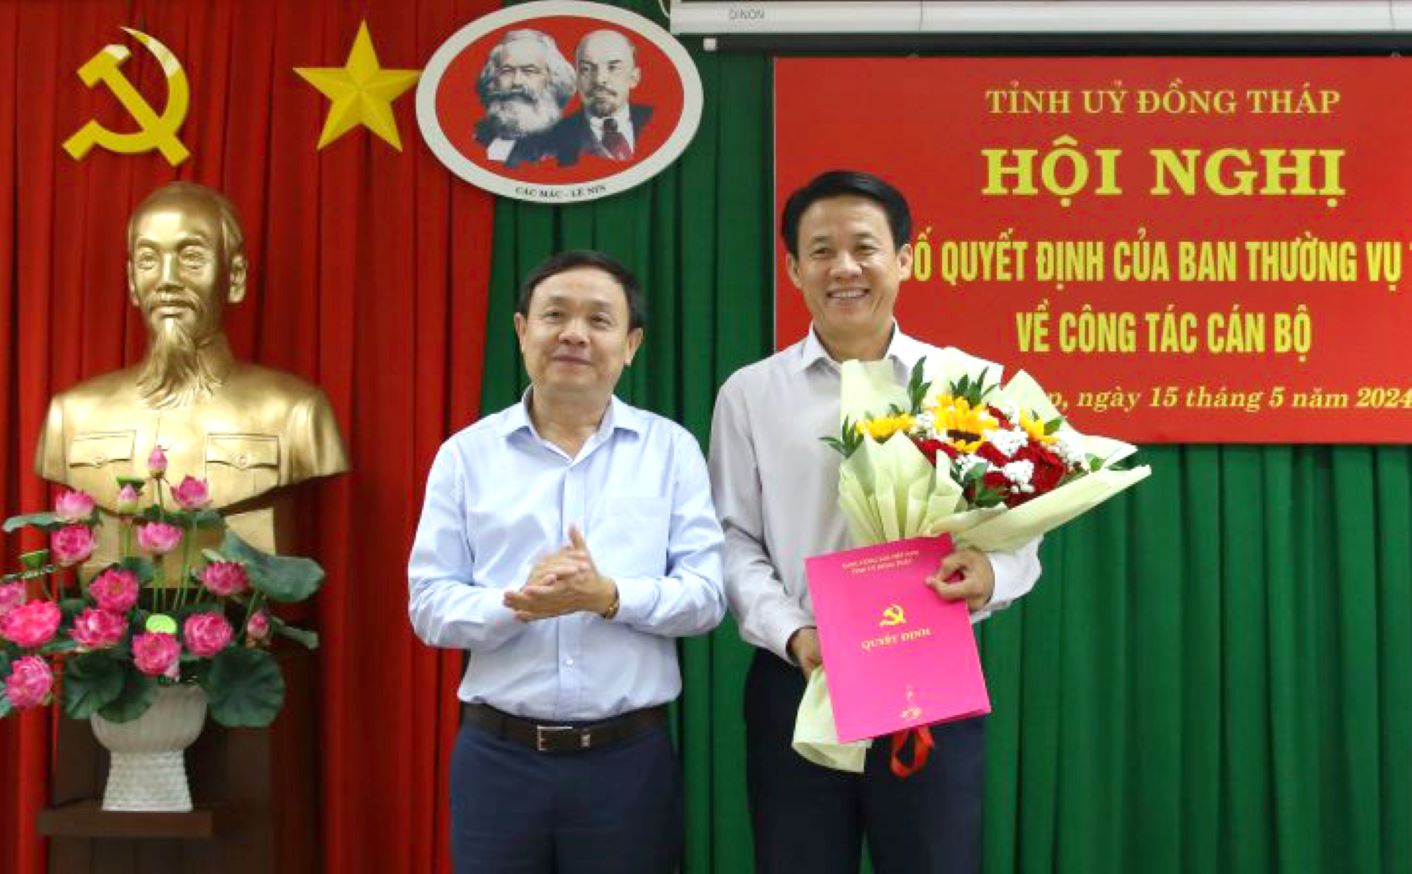 Ông Phan Văn Thắng (trái) trao Quyết định bổ nhiệm Phó Trưởng Ban Nội chính Tỉnh ủy Đồng Tháp cho ông Nguyễn Minh Tuấn. Ảnh: Cổng thông tin điện tử Đồng Tháp